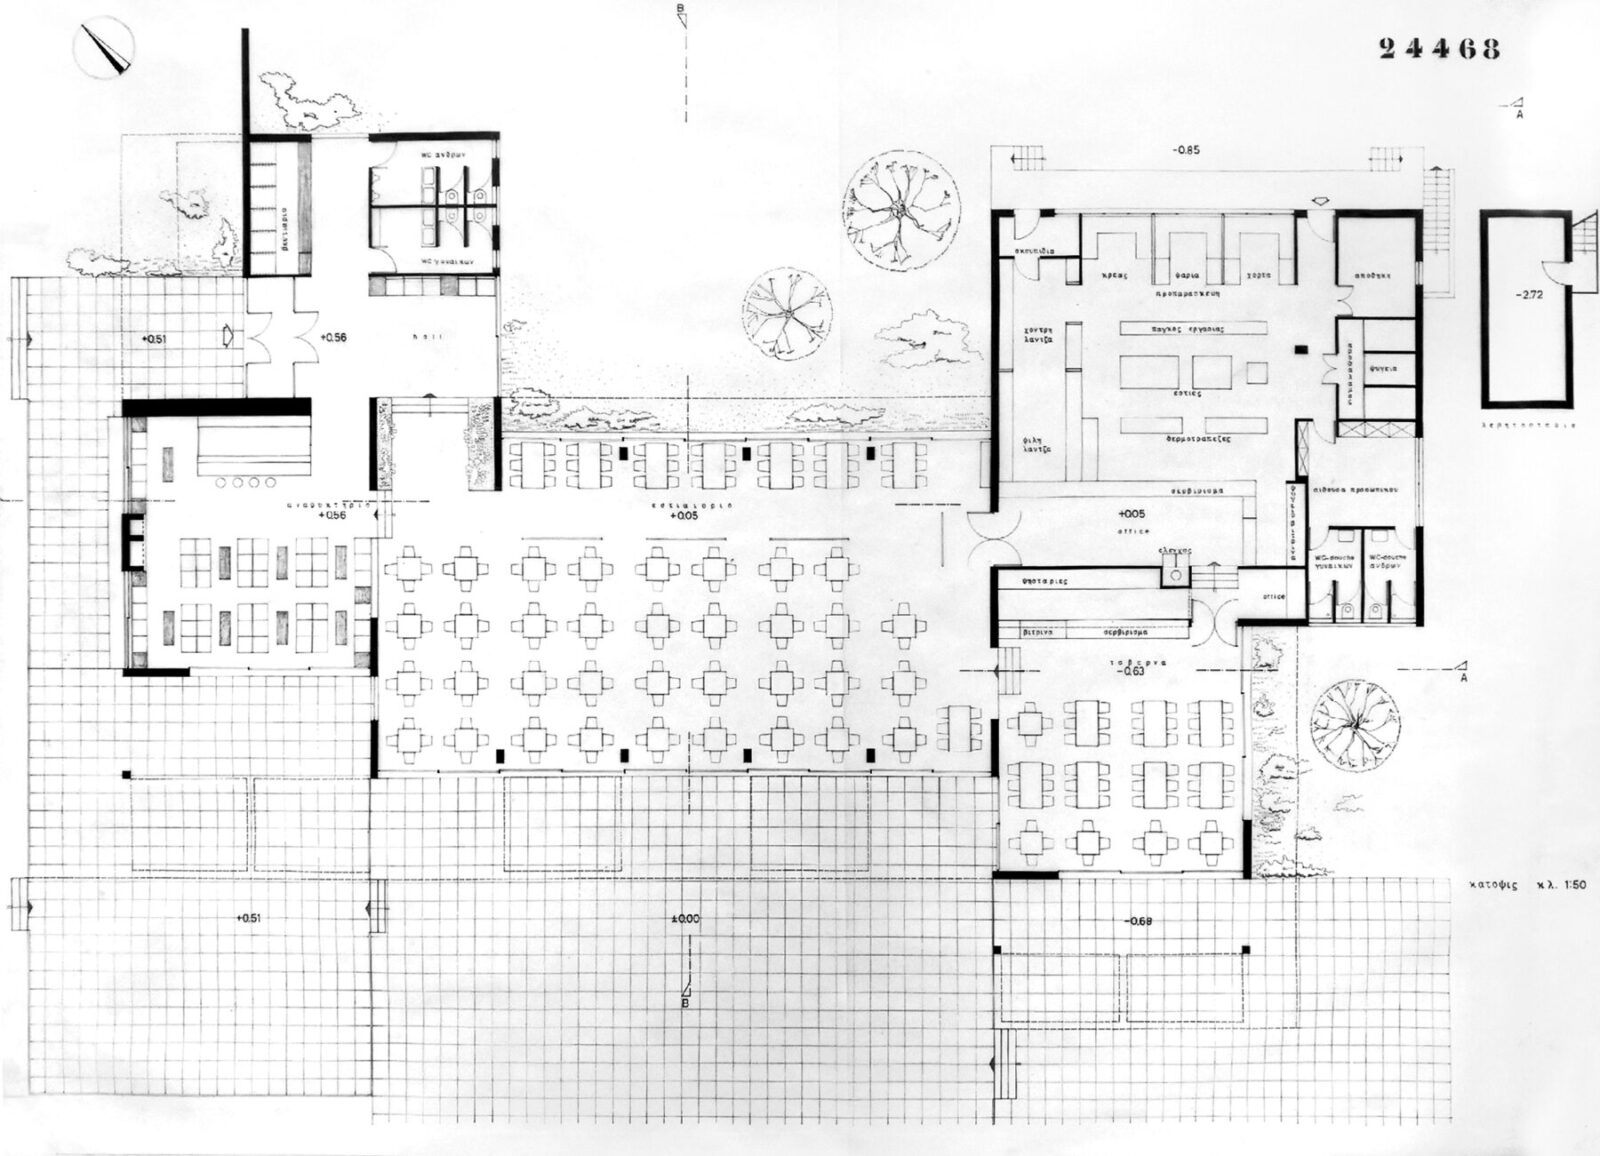 Archisearch Διερεύνηση της Γυναικείας Παρουσίας στην Ελληνική Μεταπολεμική Αρχιτεκτονική : Αναστασία Τζάκου, Μυρτώ Κωστίκα, Σέβα Καρακώστα - 3 Μονογραφίες | Ερευνητική εργασία από τις Κορίνα Νούση & Έλλη Τσακοπούλου